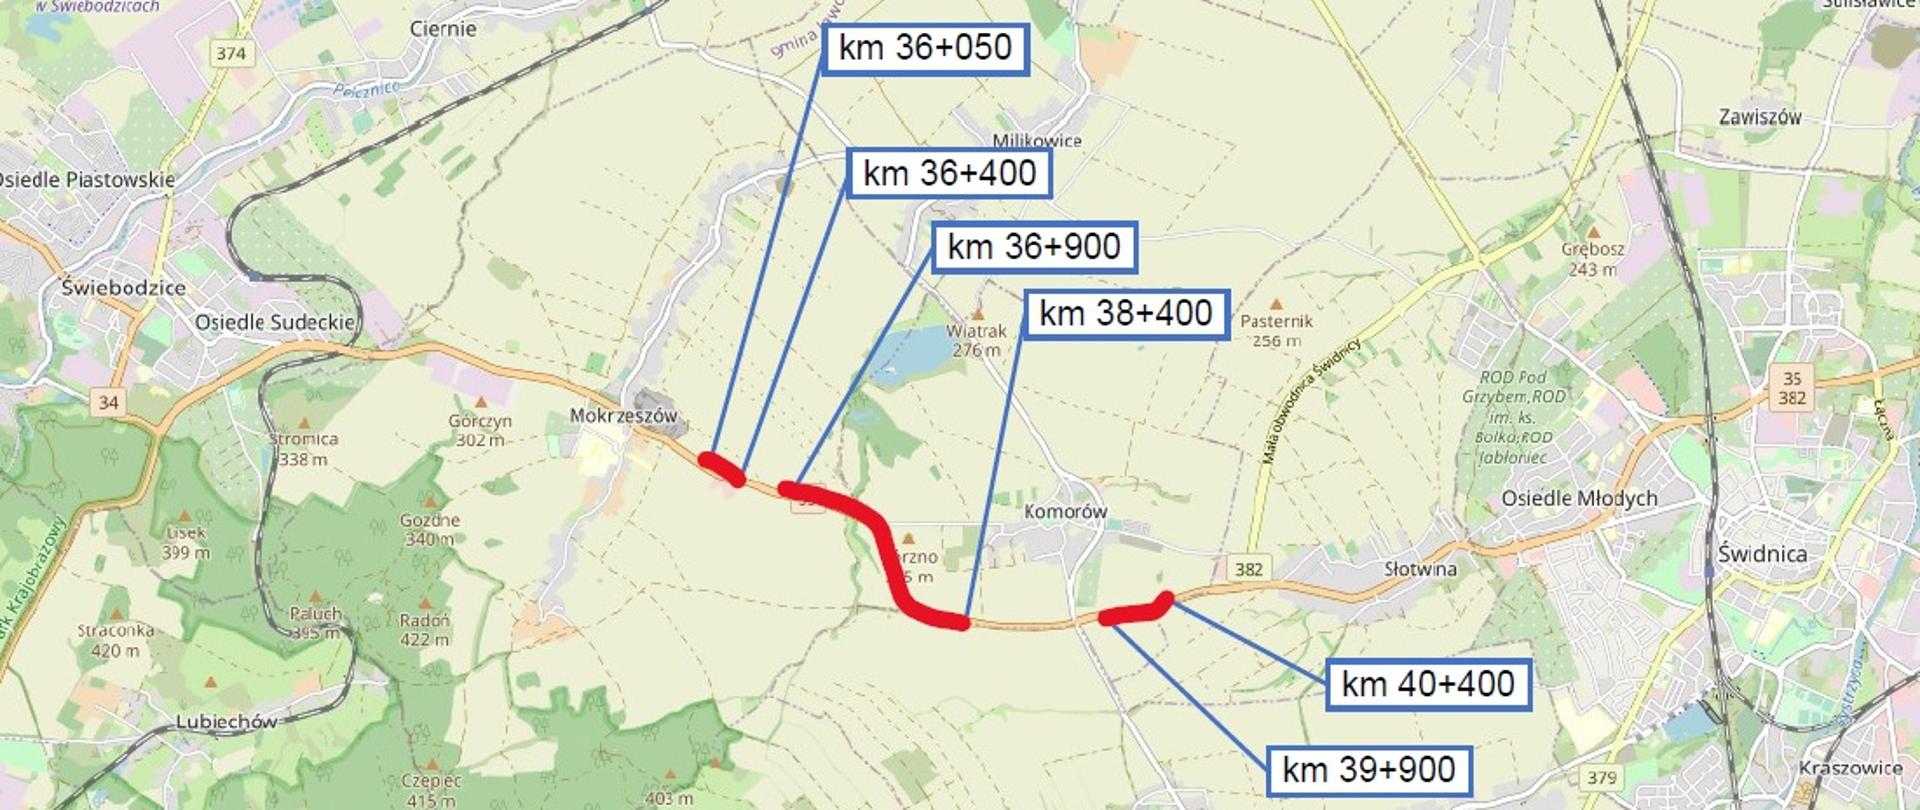 Na zdjęciu widać mapę DK35 na odcinku Mokrzeszów - Słotwina, z naniesionymi danymi dot. remontowanych odcinków drogi. 